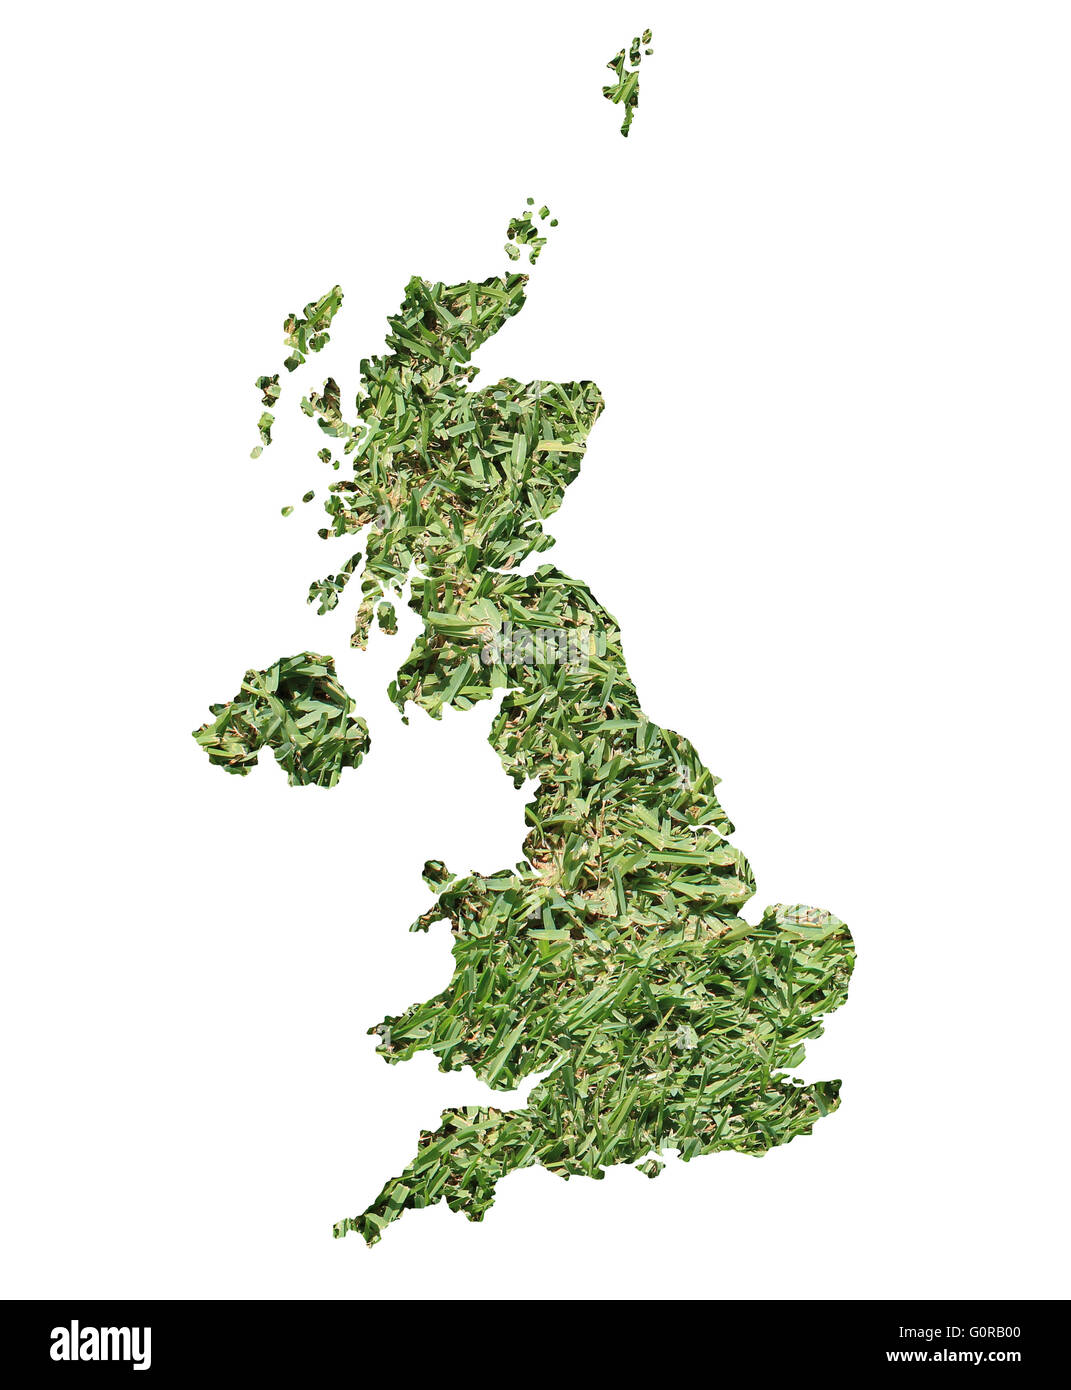 Mappa di Regno Unito riempito con erba verde, ambientale e concetto ecologico. Foto Stock